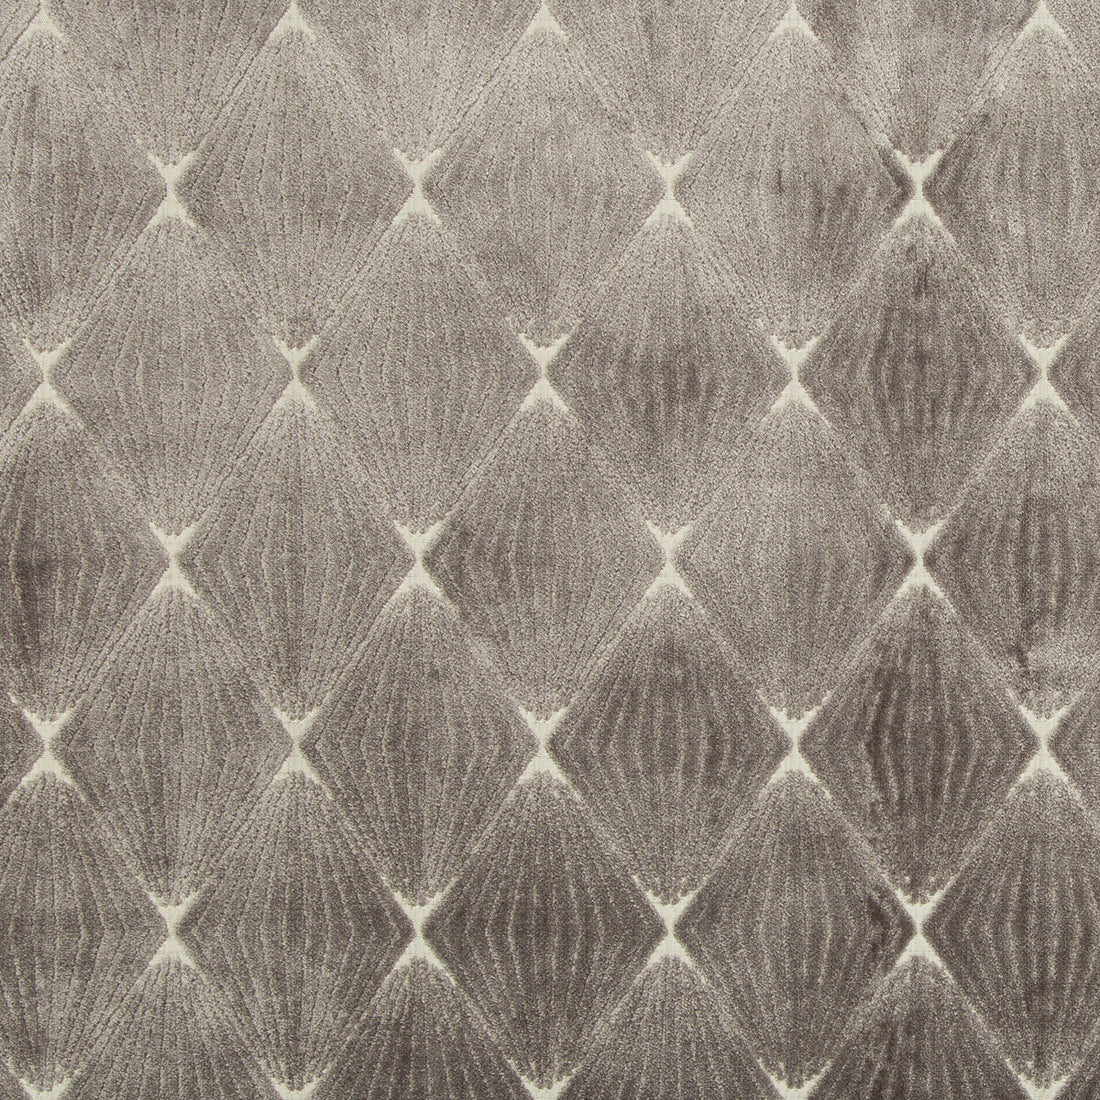 Kravet Design fabric in 35735-11 color - pattern 35735.11.0 - by Kravet Design